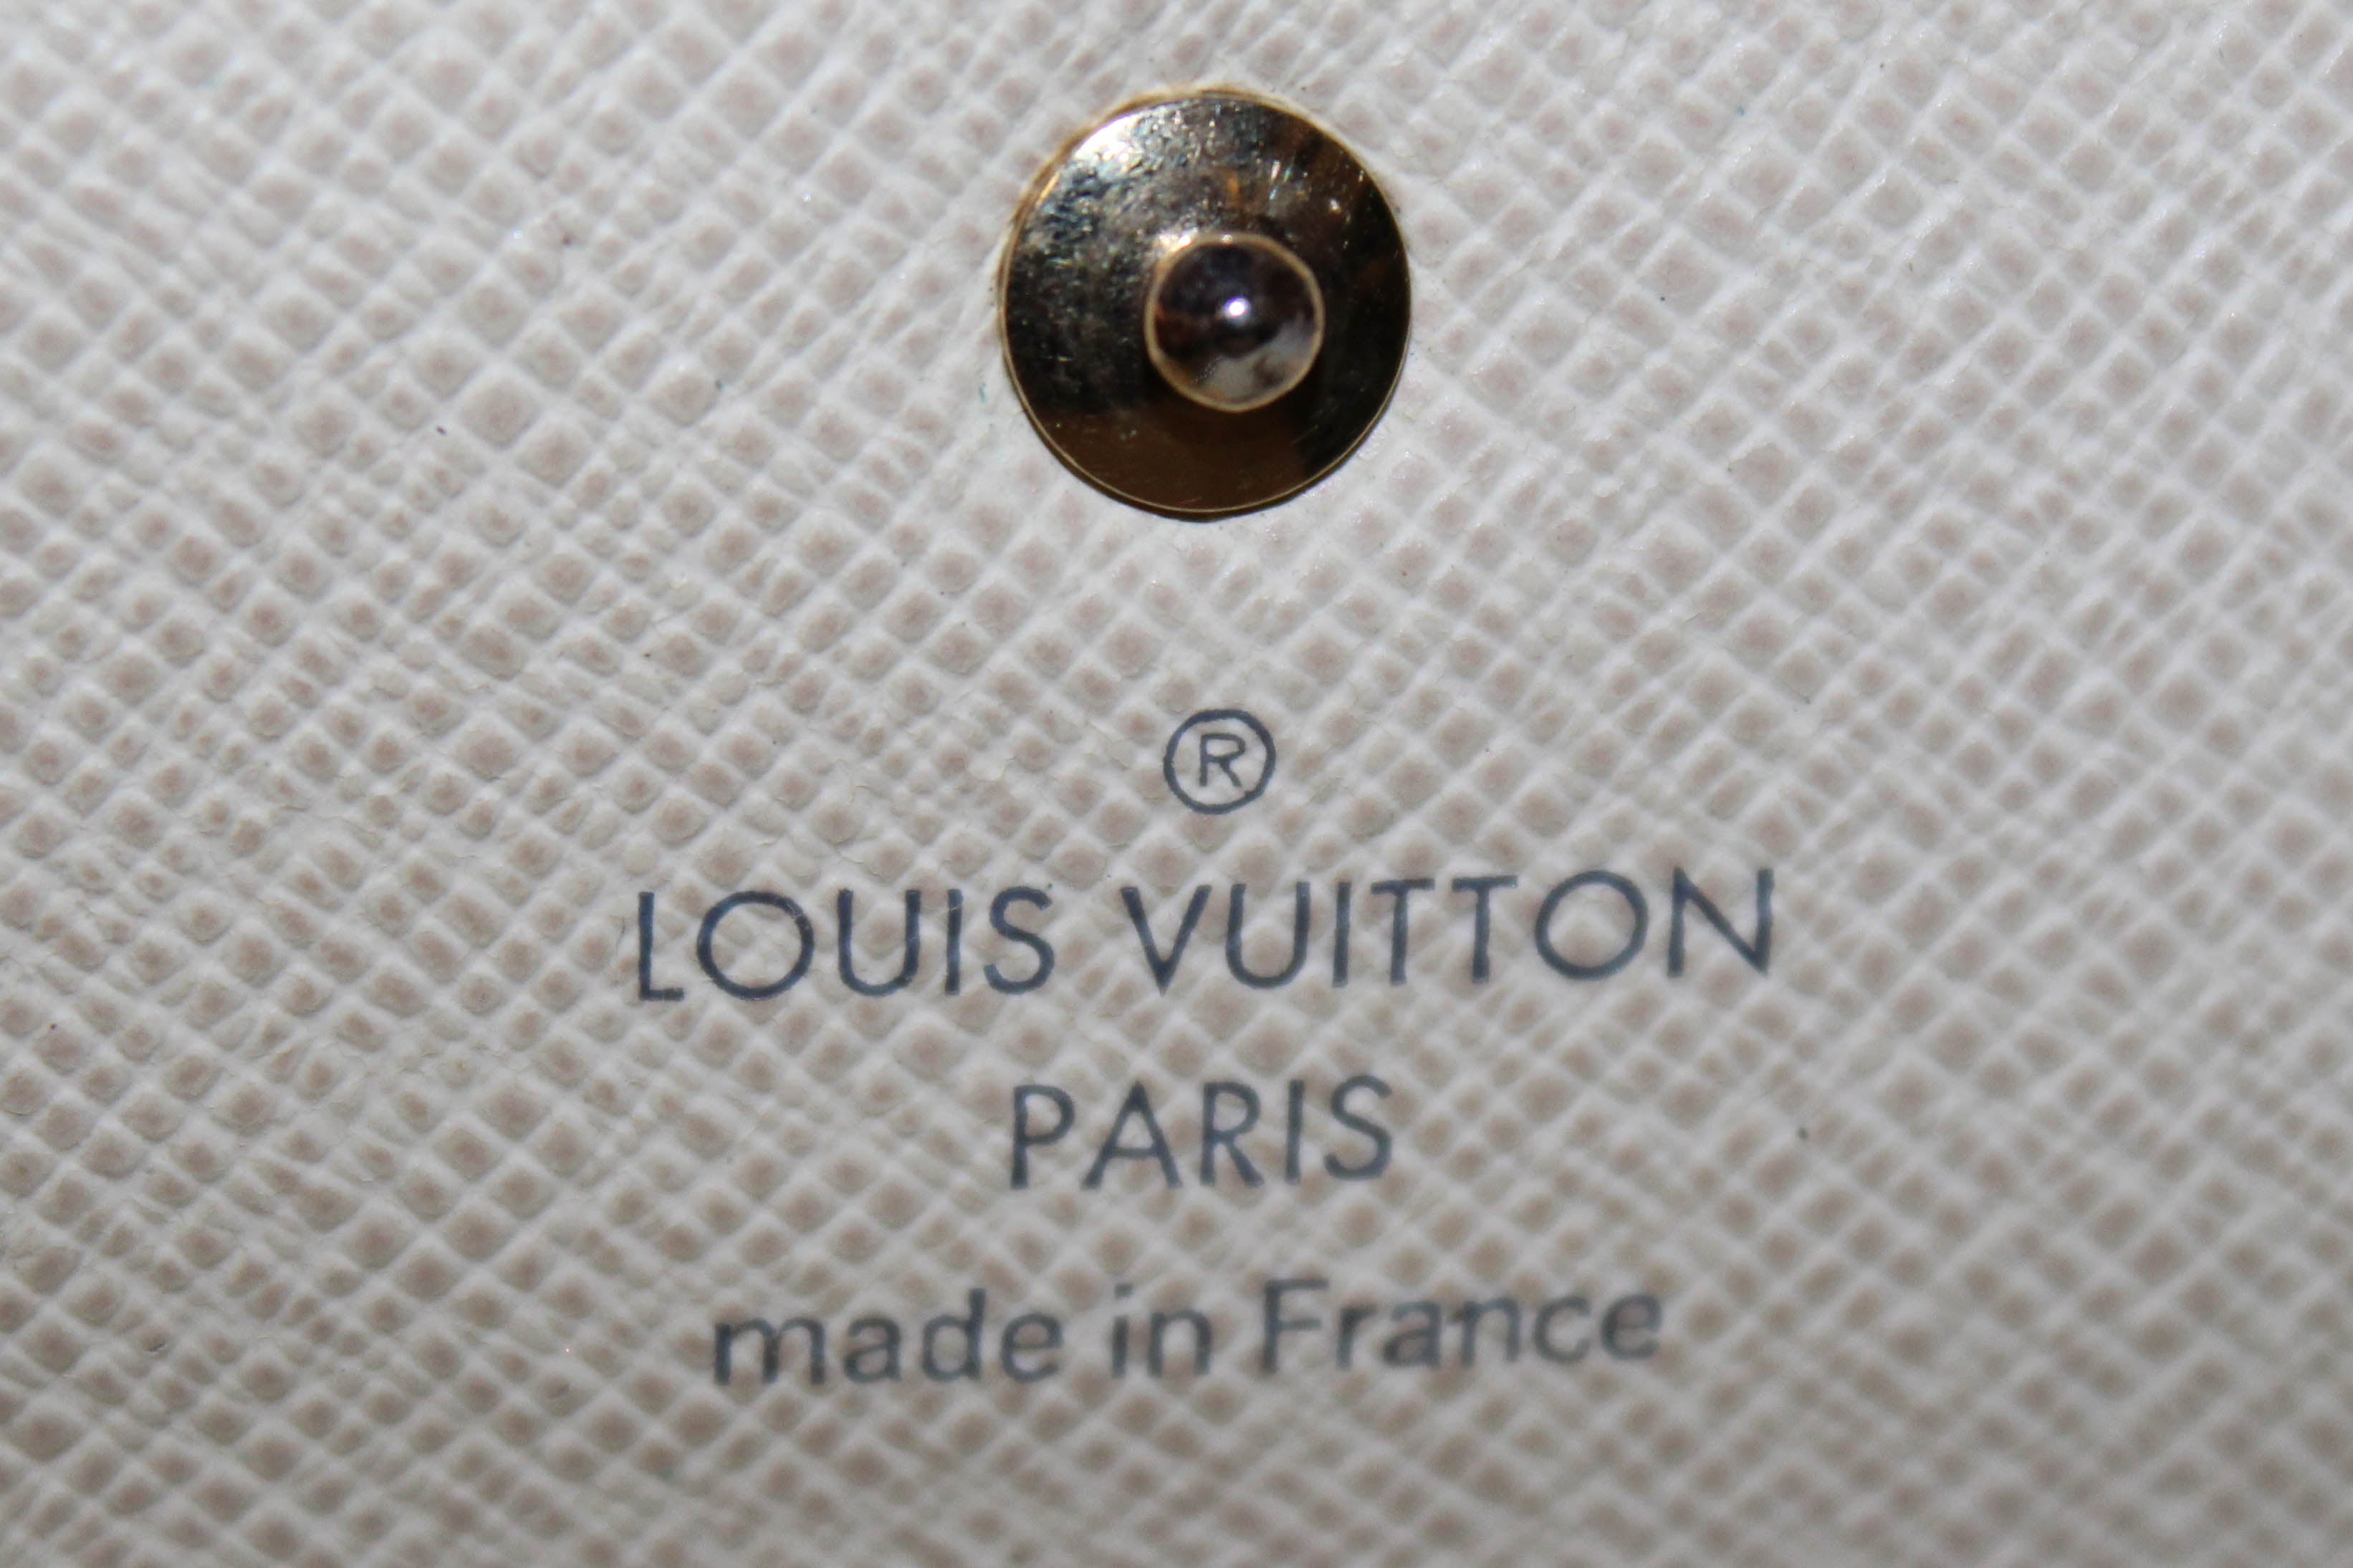 Authentic Louis Vuitton Damier Azur 4 Key Holder